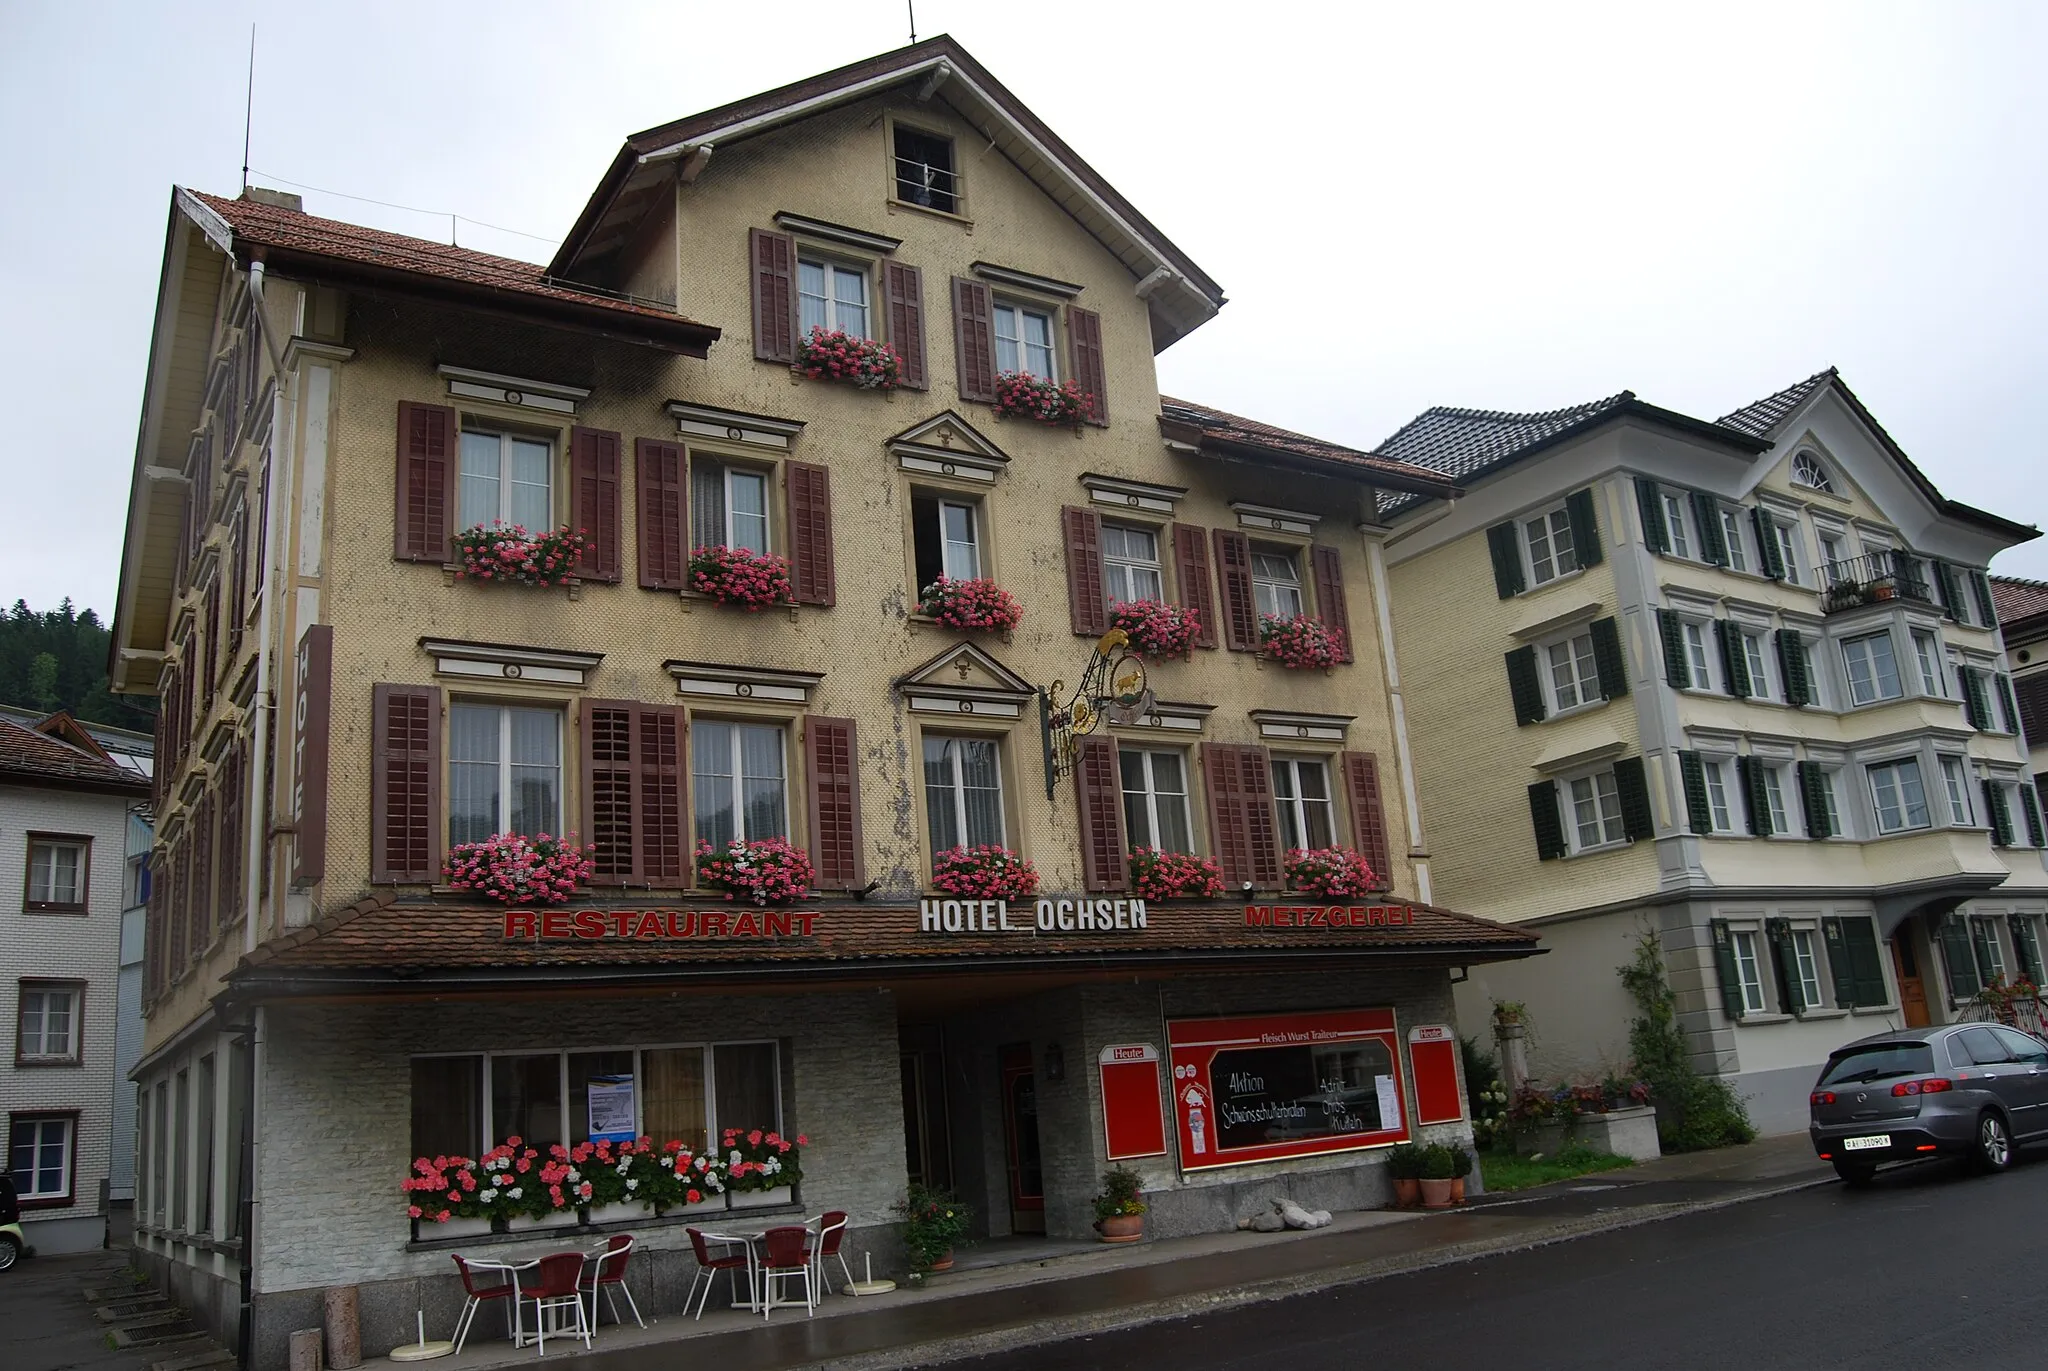 Photo showing: Hotel Ochsen at Dorfstrasse 52, Bühler, canton of Appenzell Ausserrhoden, Switzerland